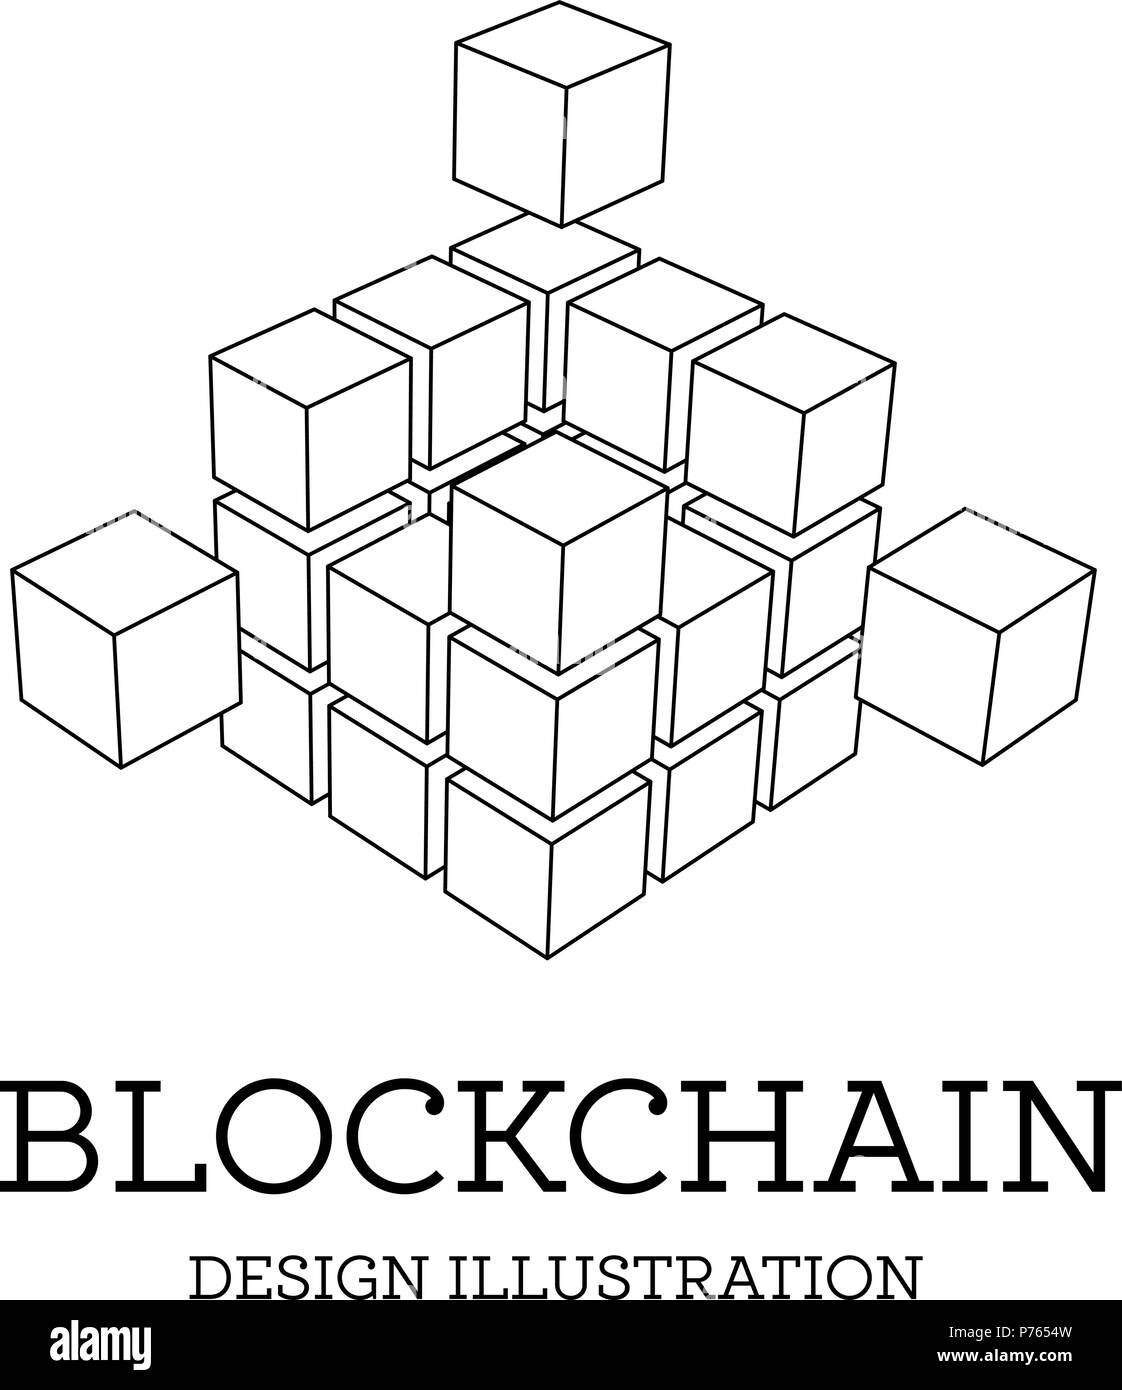 Blockchain vector illustration sous forme de cubes. La conception de la chaîne de bloc. Le concept de transfert de l'information Illustration de Vecteur